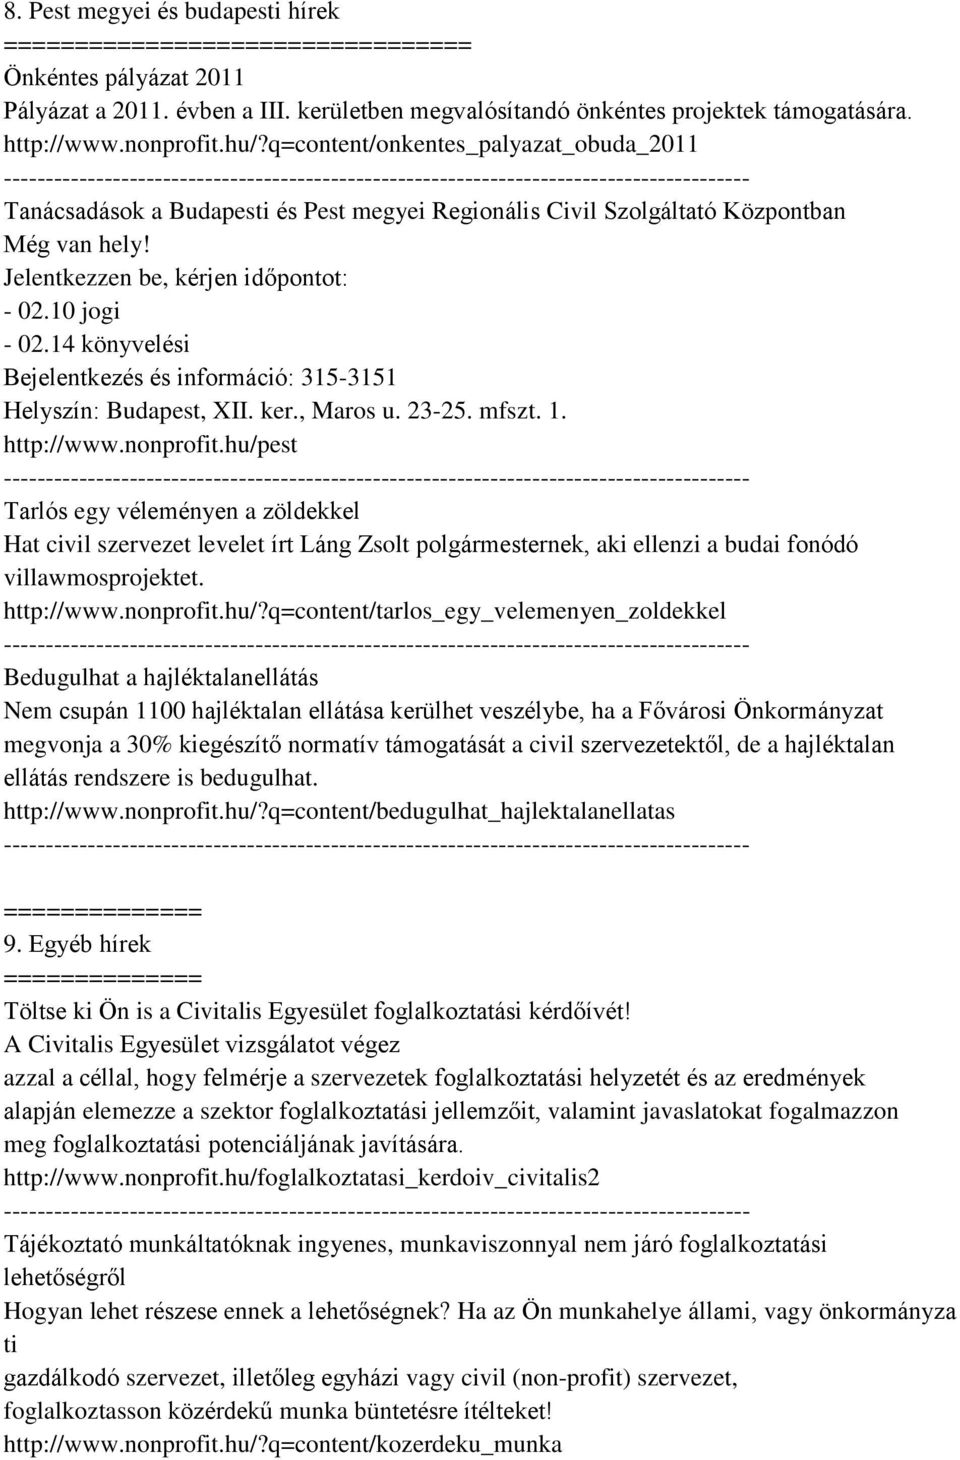 14 könyvelési Bejelentkezés és információ: 315-3151 Helyszín: Budapest, XII. ker., Maros u. 23-25. mfszt. 1. http://www.nonprofit.